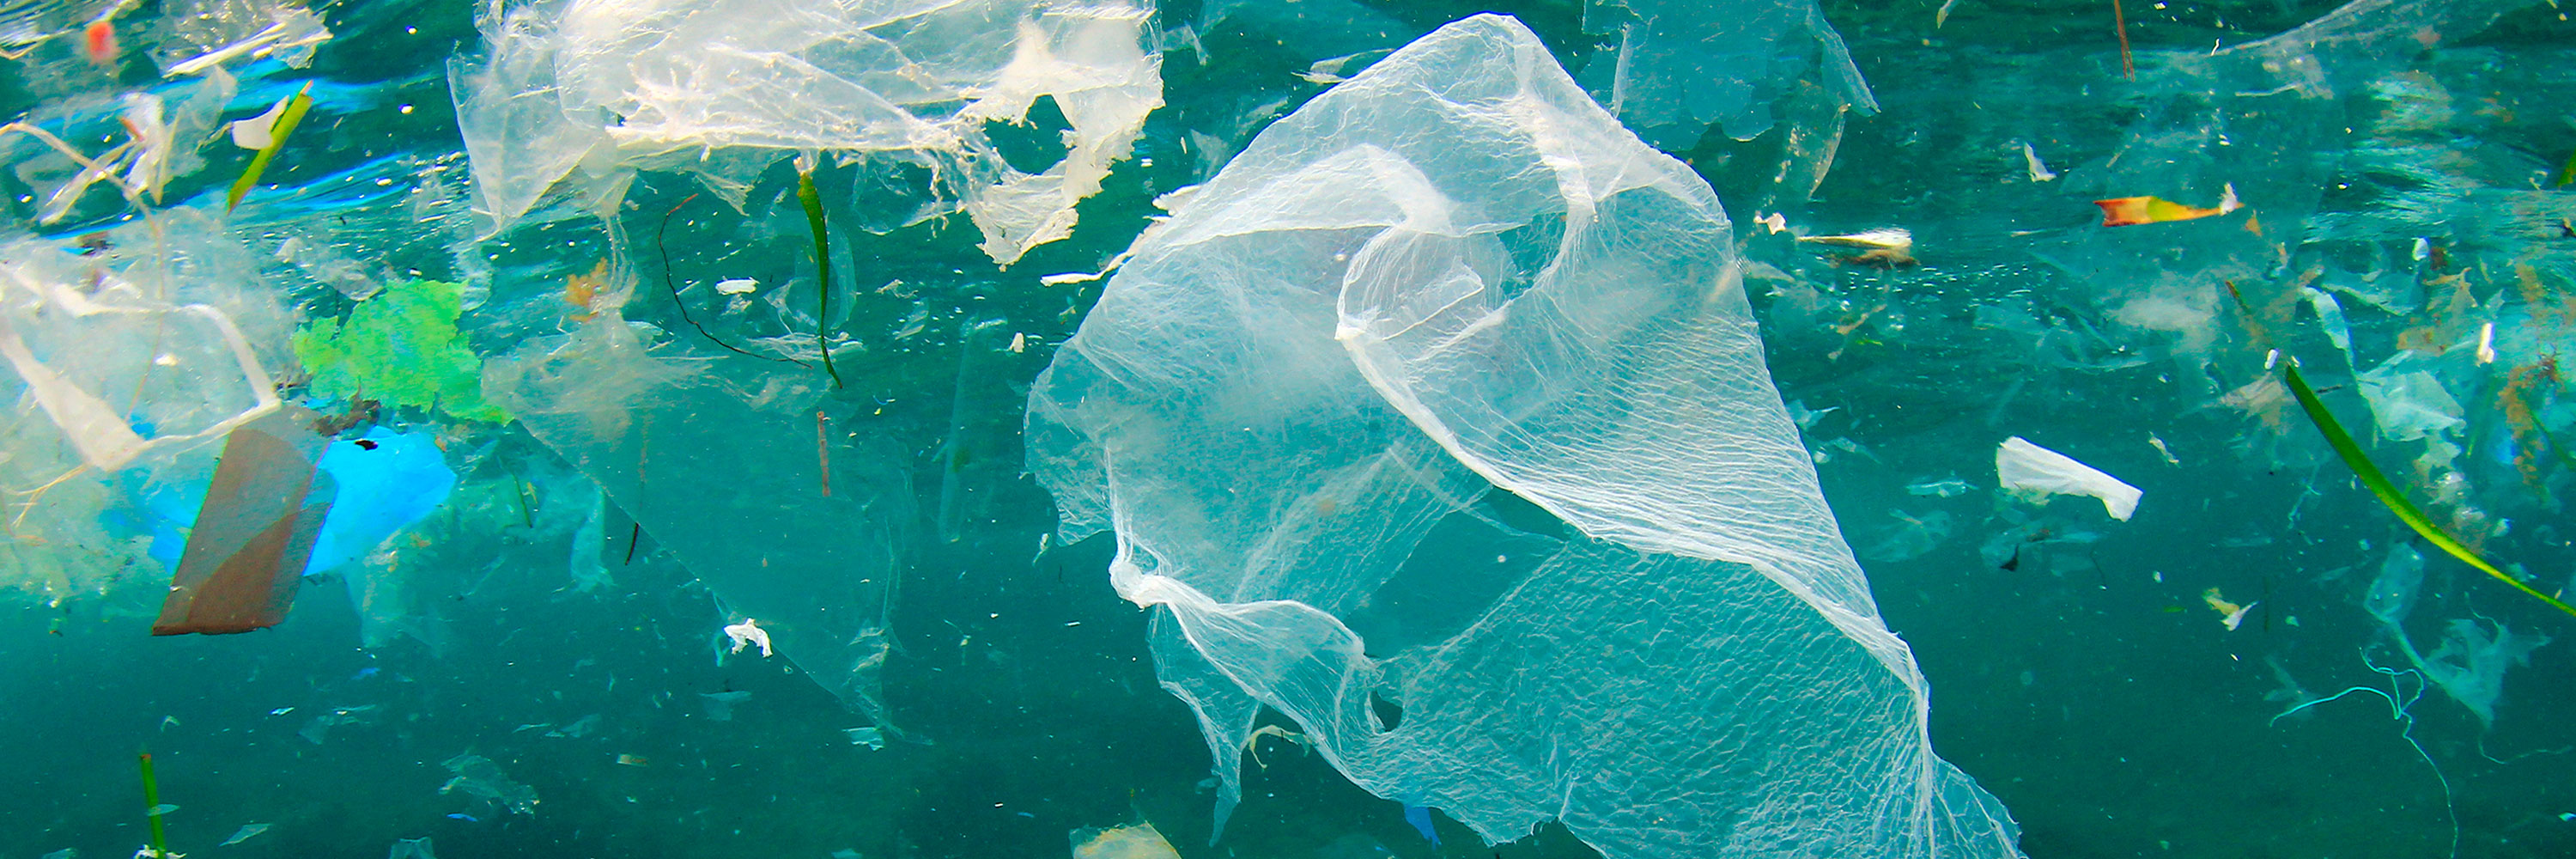 mar lleno de plásticos afecta a los animales